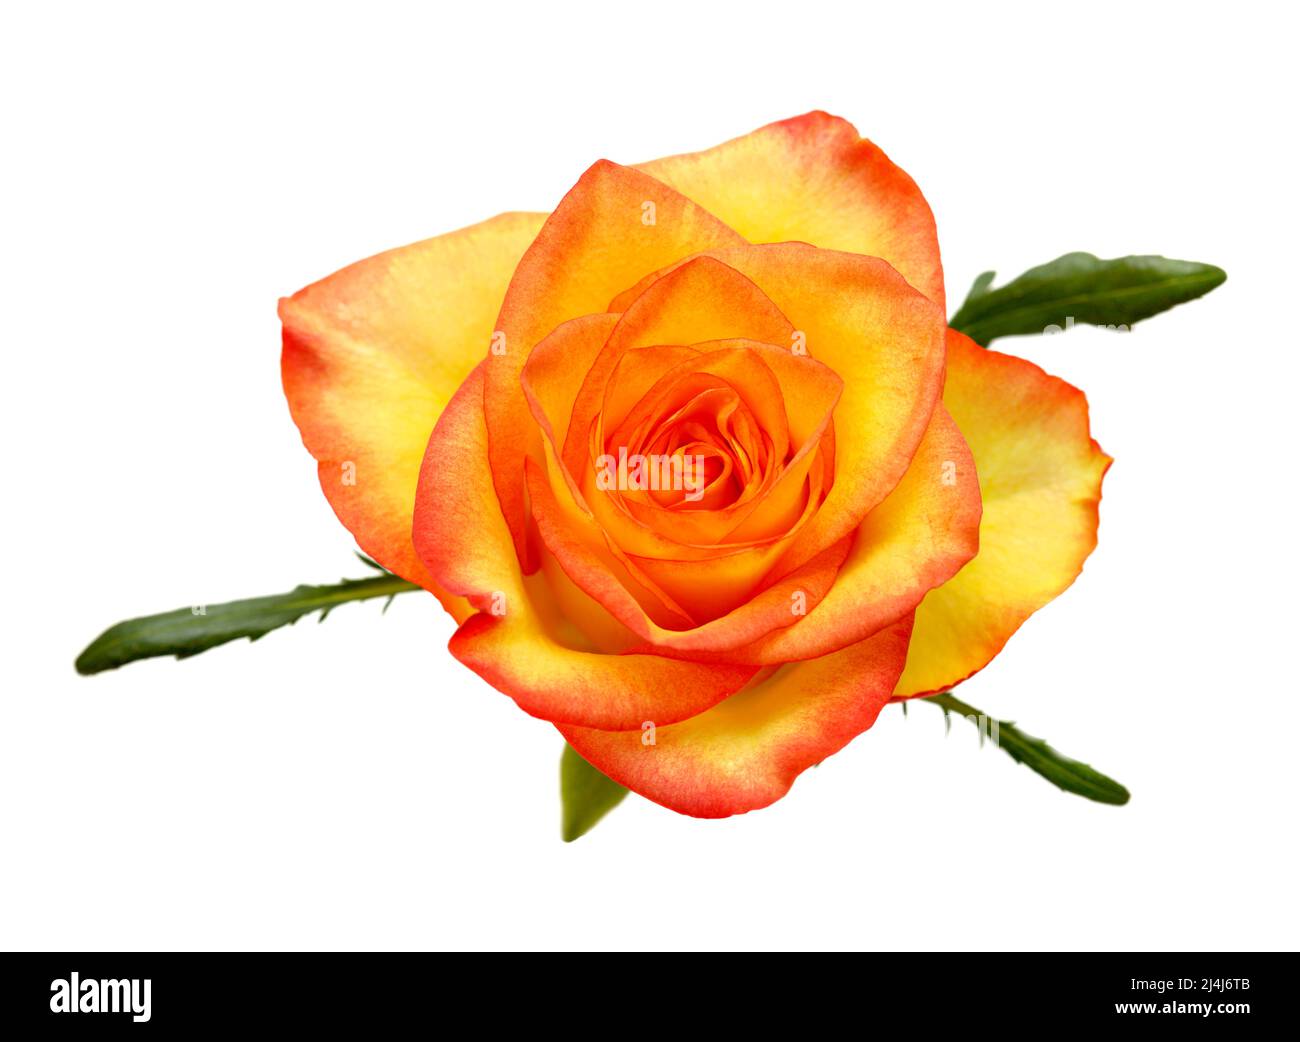 Rose avec un dégradé de couleur jaune à orange dans les pétales Banque D'Images